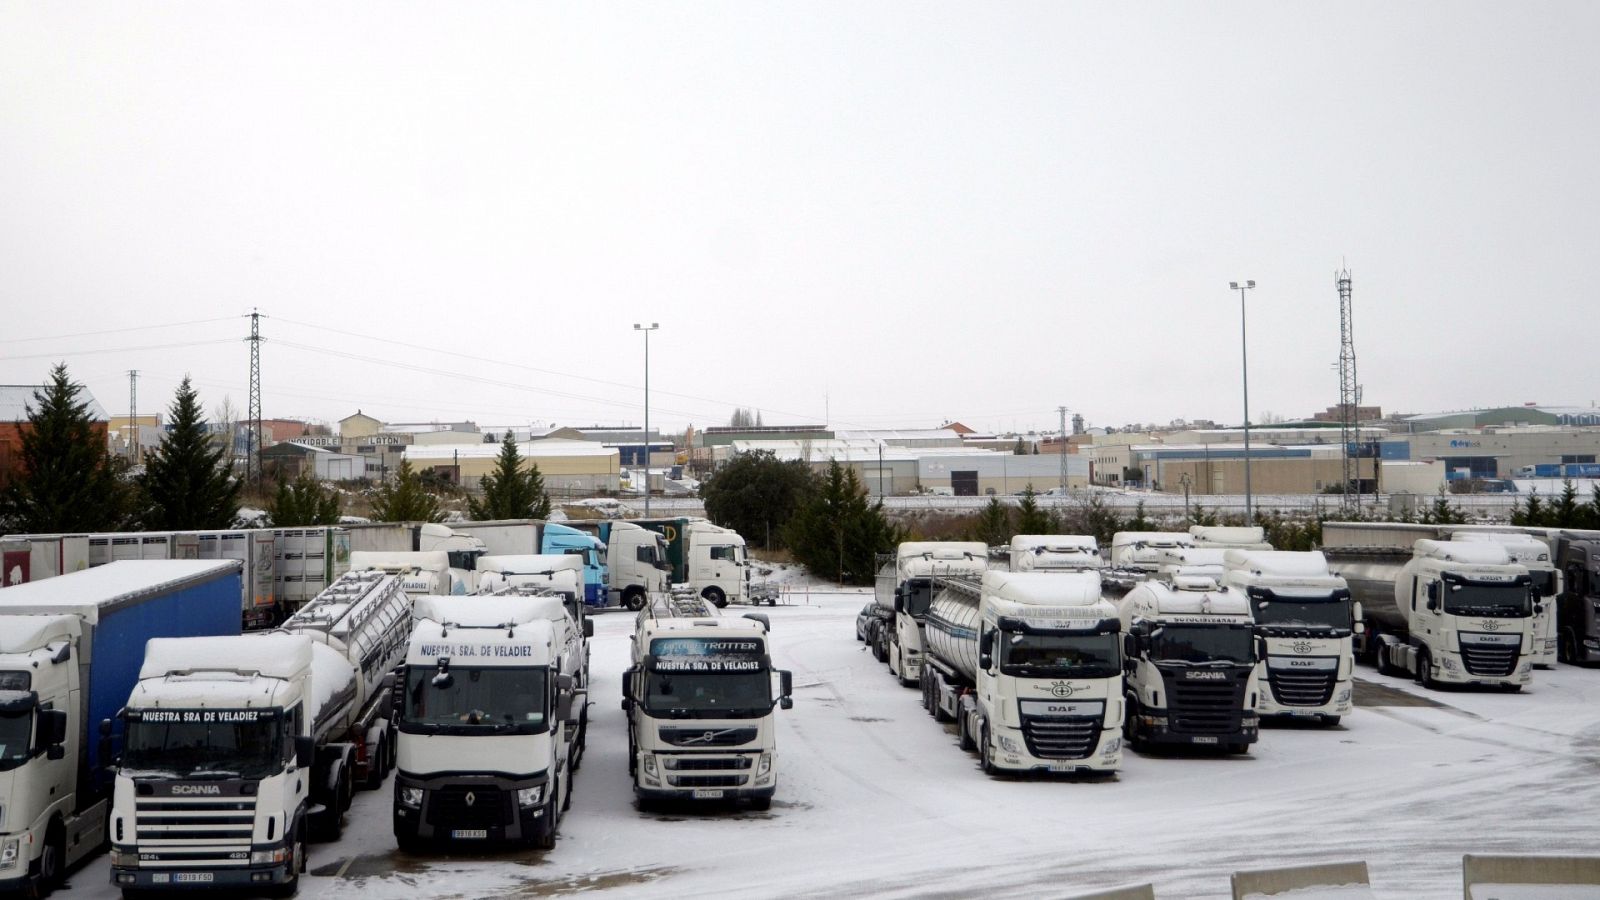   Camiones retenidos en el Centro de Transportes de Segovia